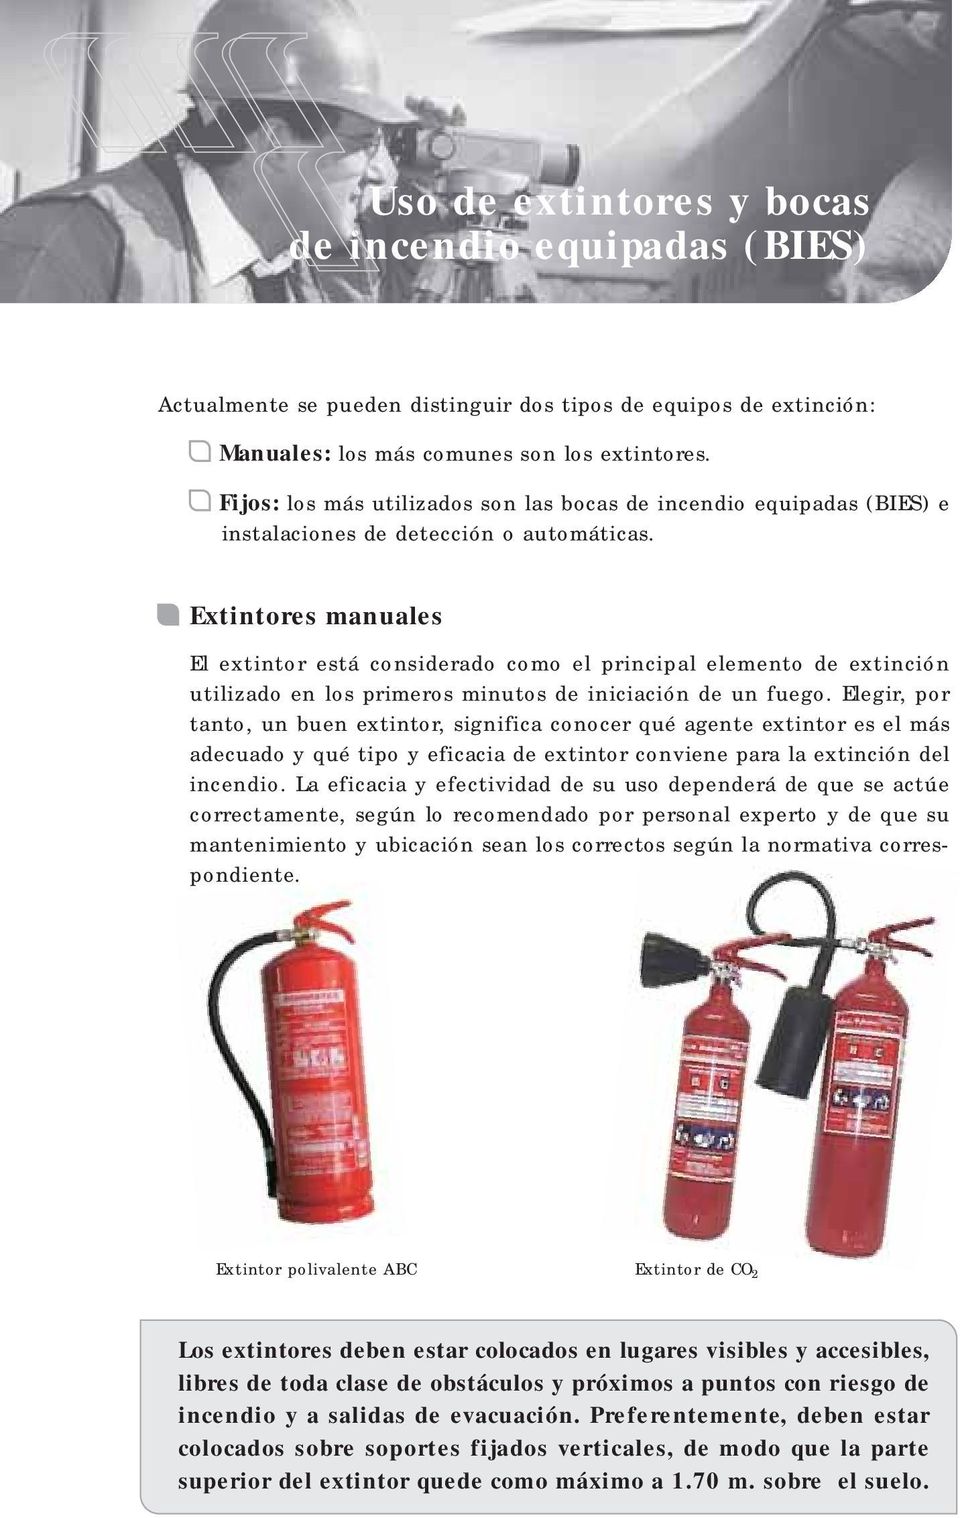 Extintores manuales El extintor está considerado como el principal elemento de extinción utilizado en los primeros minutos de iniciación de un fuego.